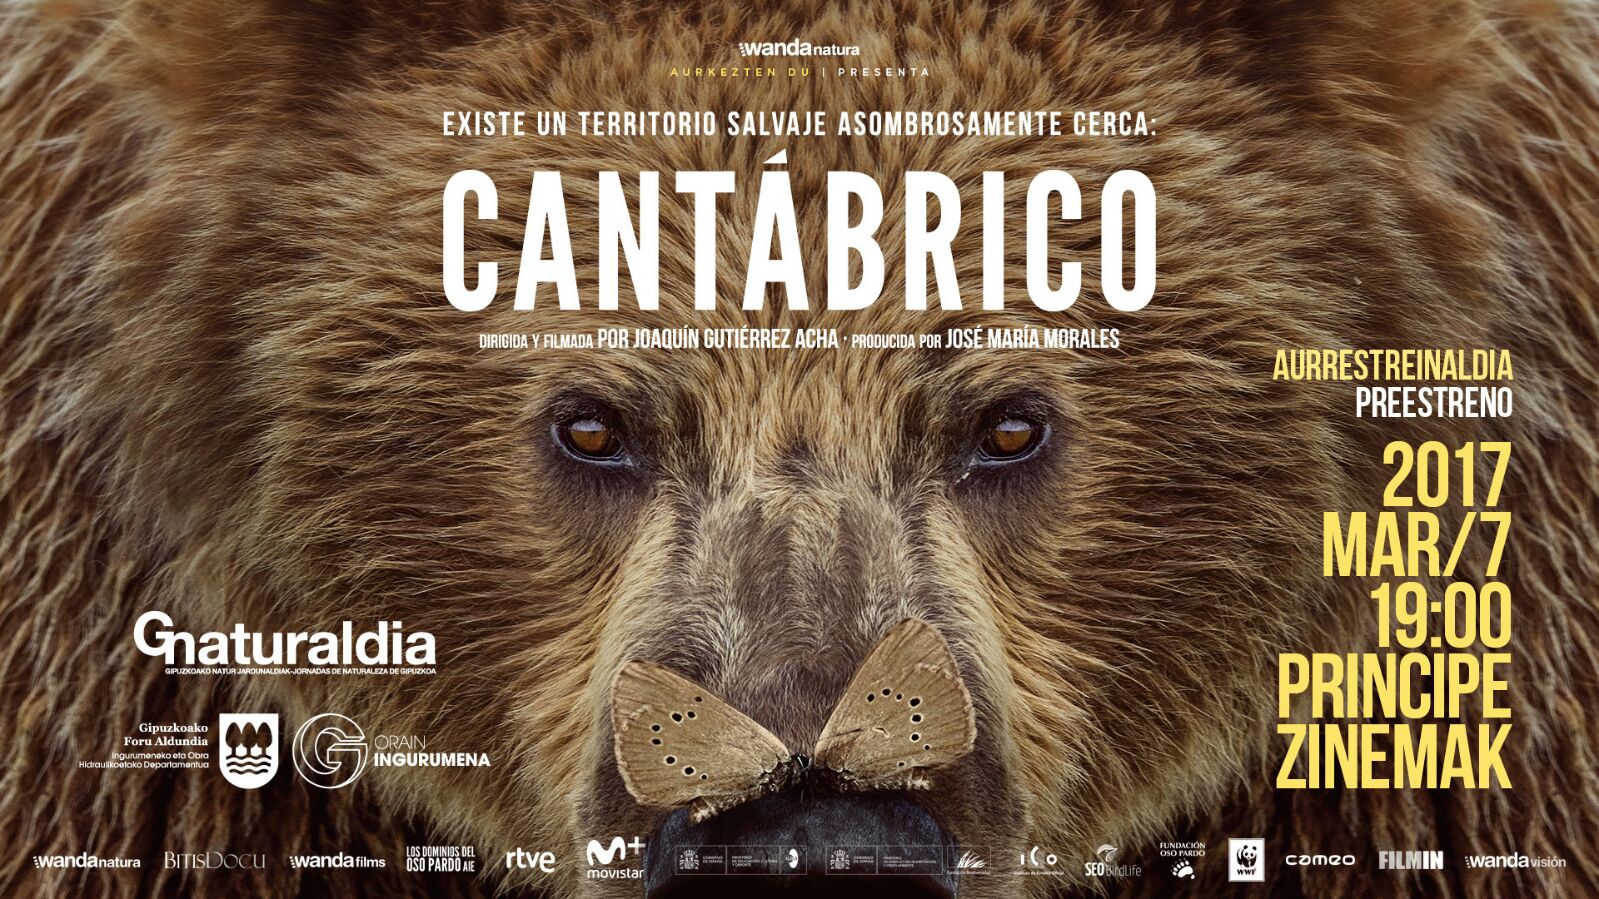 'Cantábrico' filmaren aurrestreinaldia martxoaren 7an...